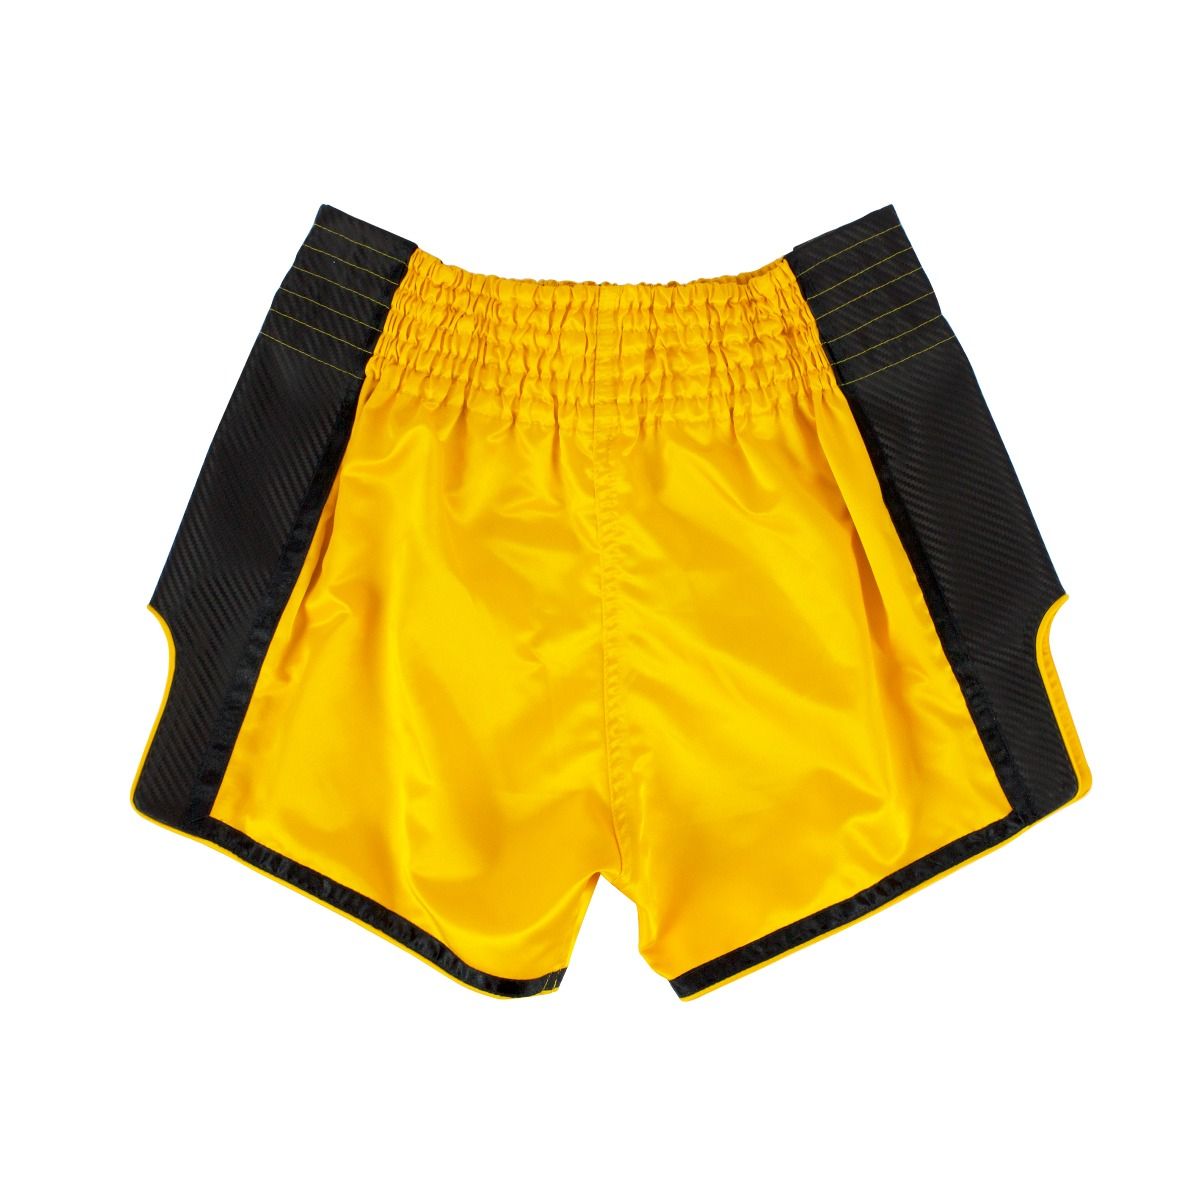 FAIRTEX Slim Cut Muaythai Shorts BS1701 - Yellow